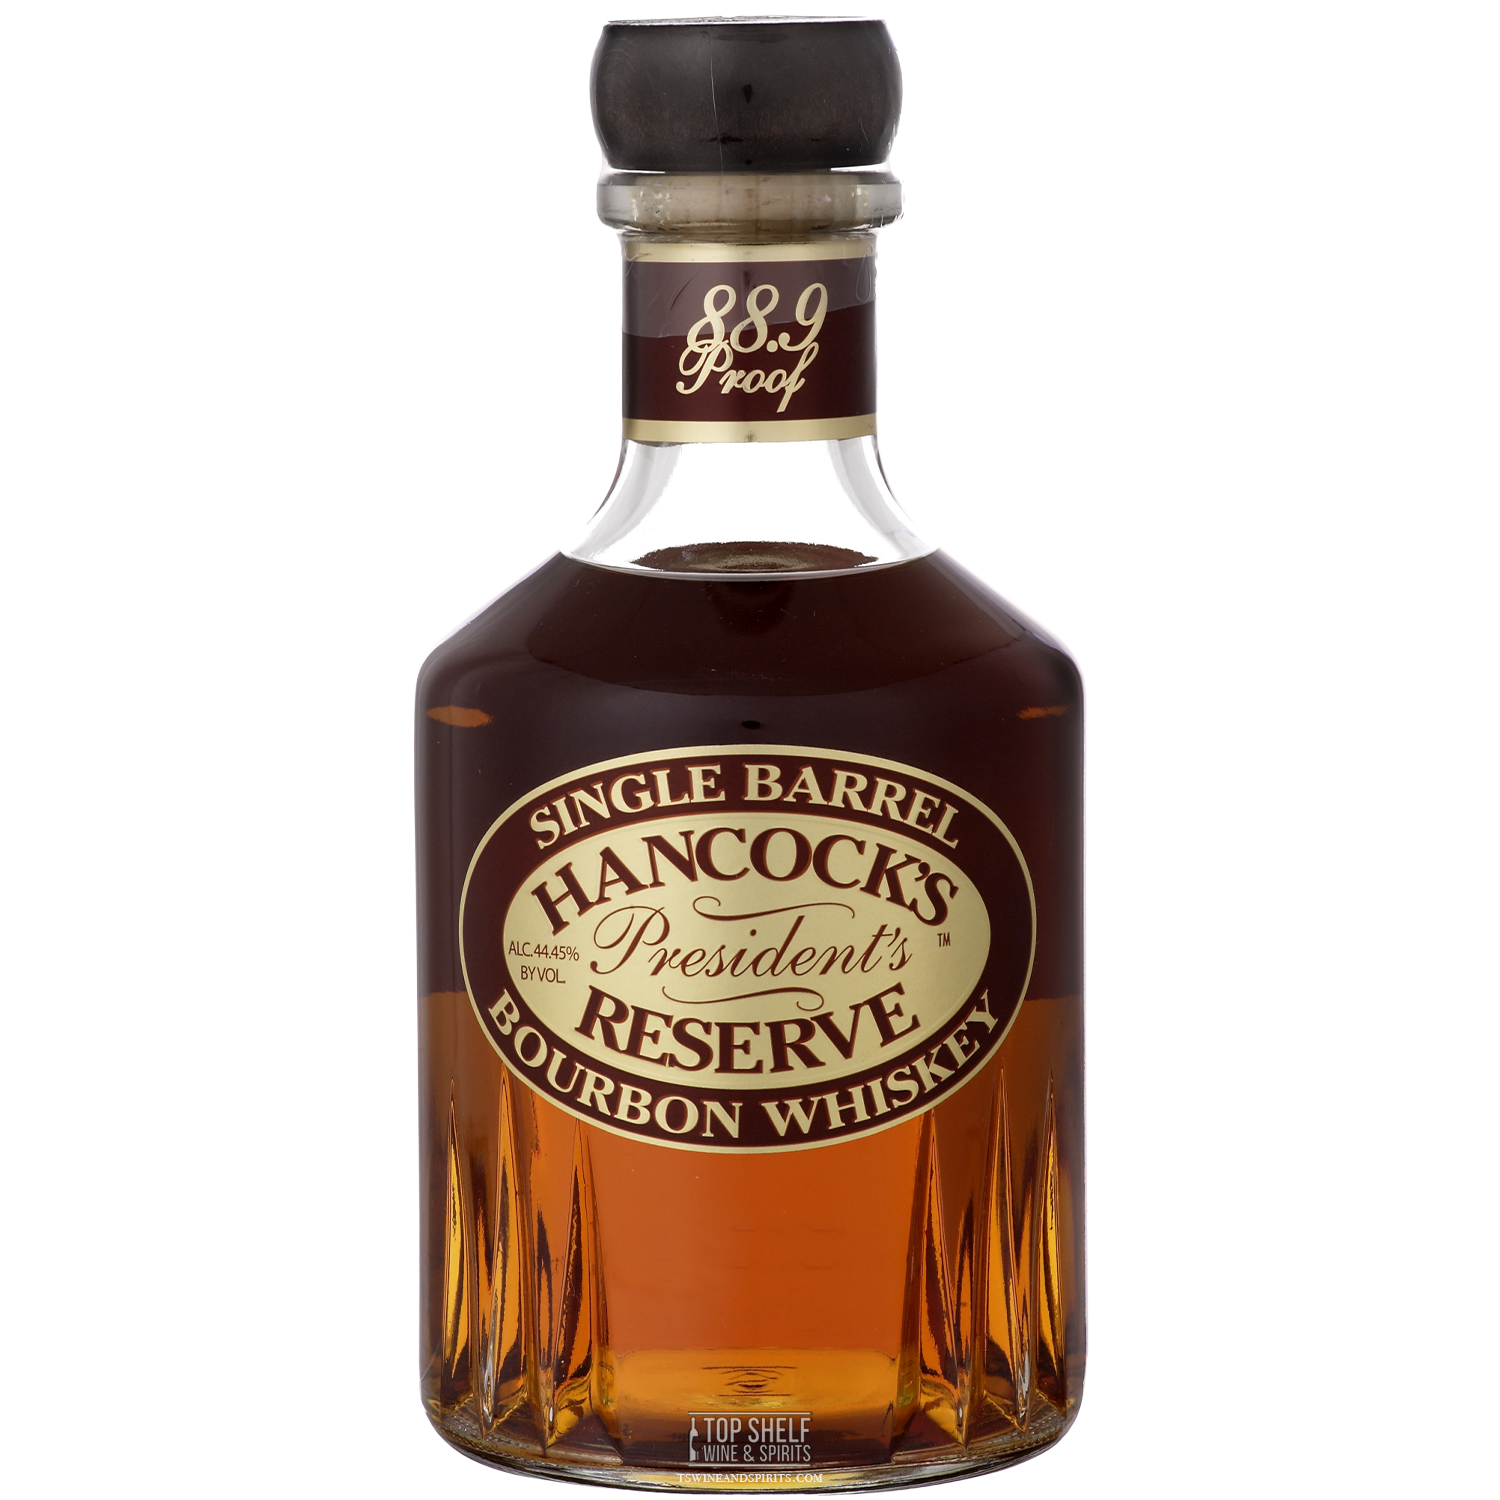 Hancock’s President’s Reserve Bourbon Whiskey